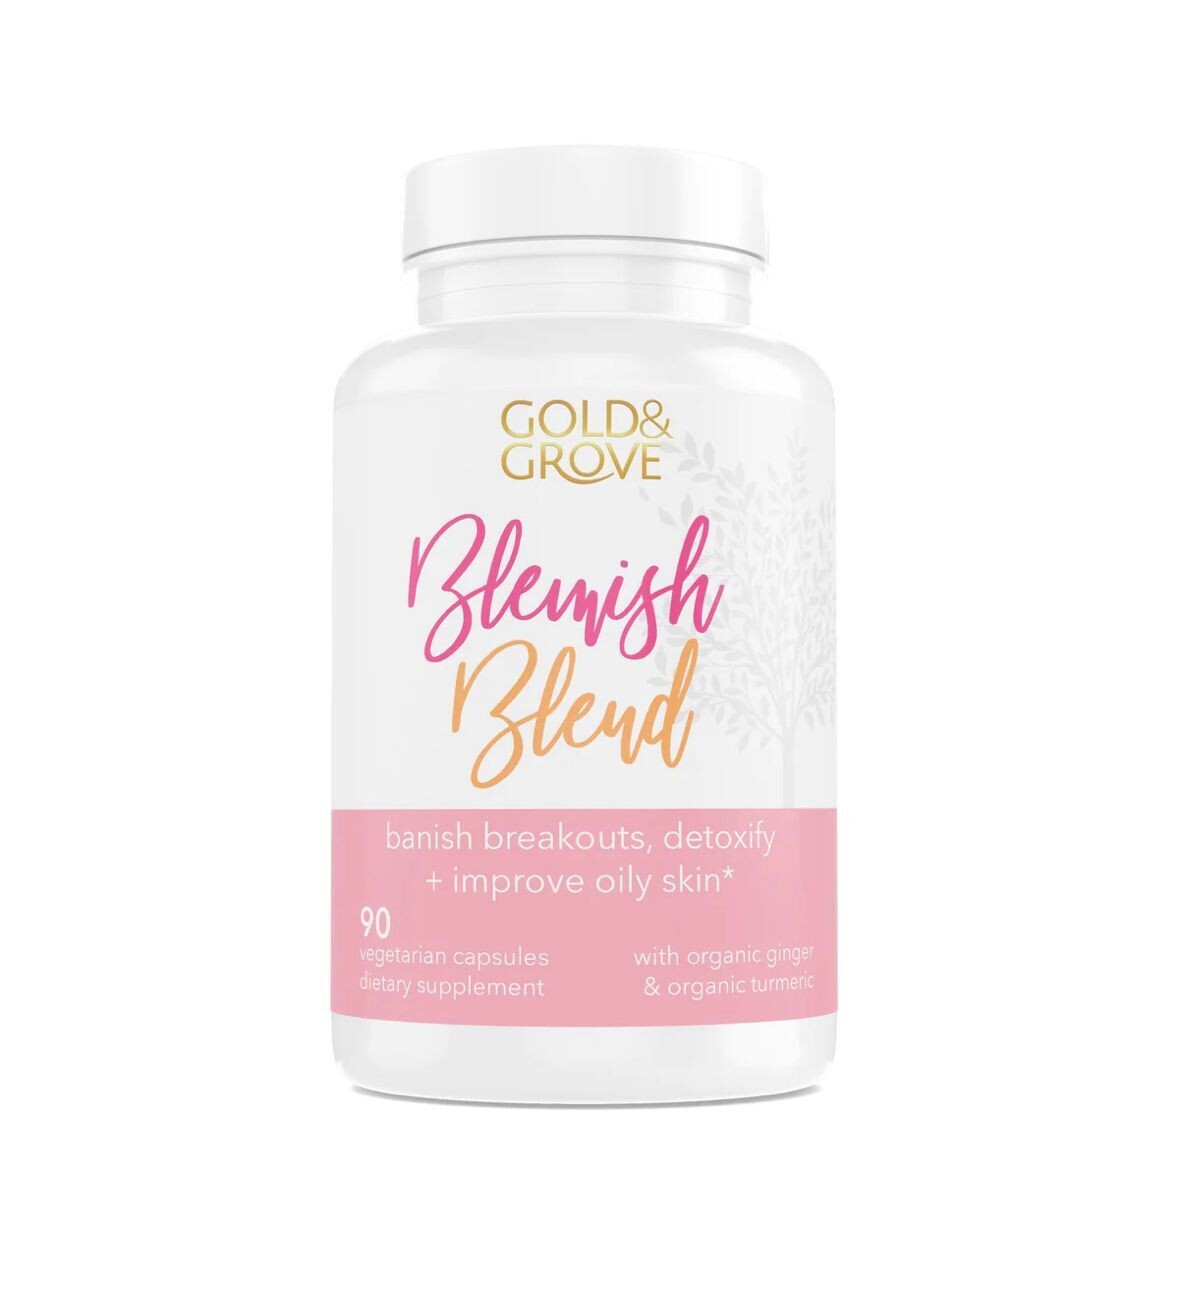 Blemish Blend Acne Supplement